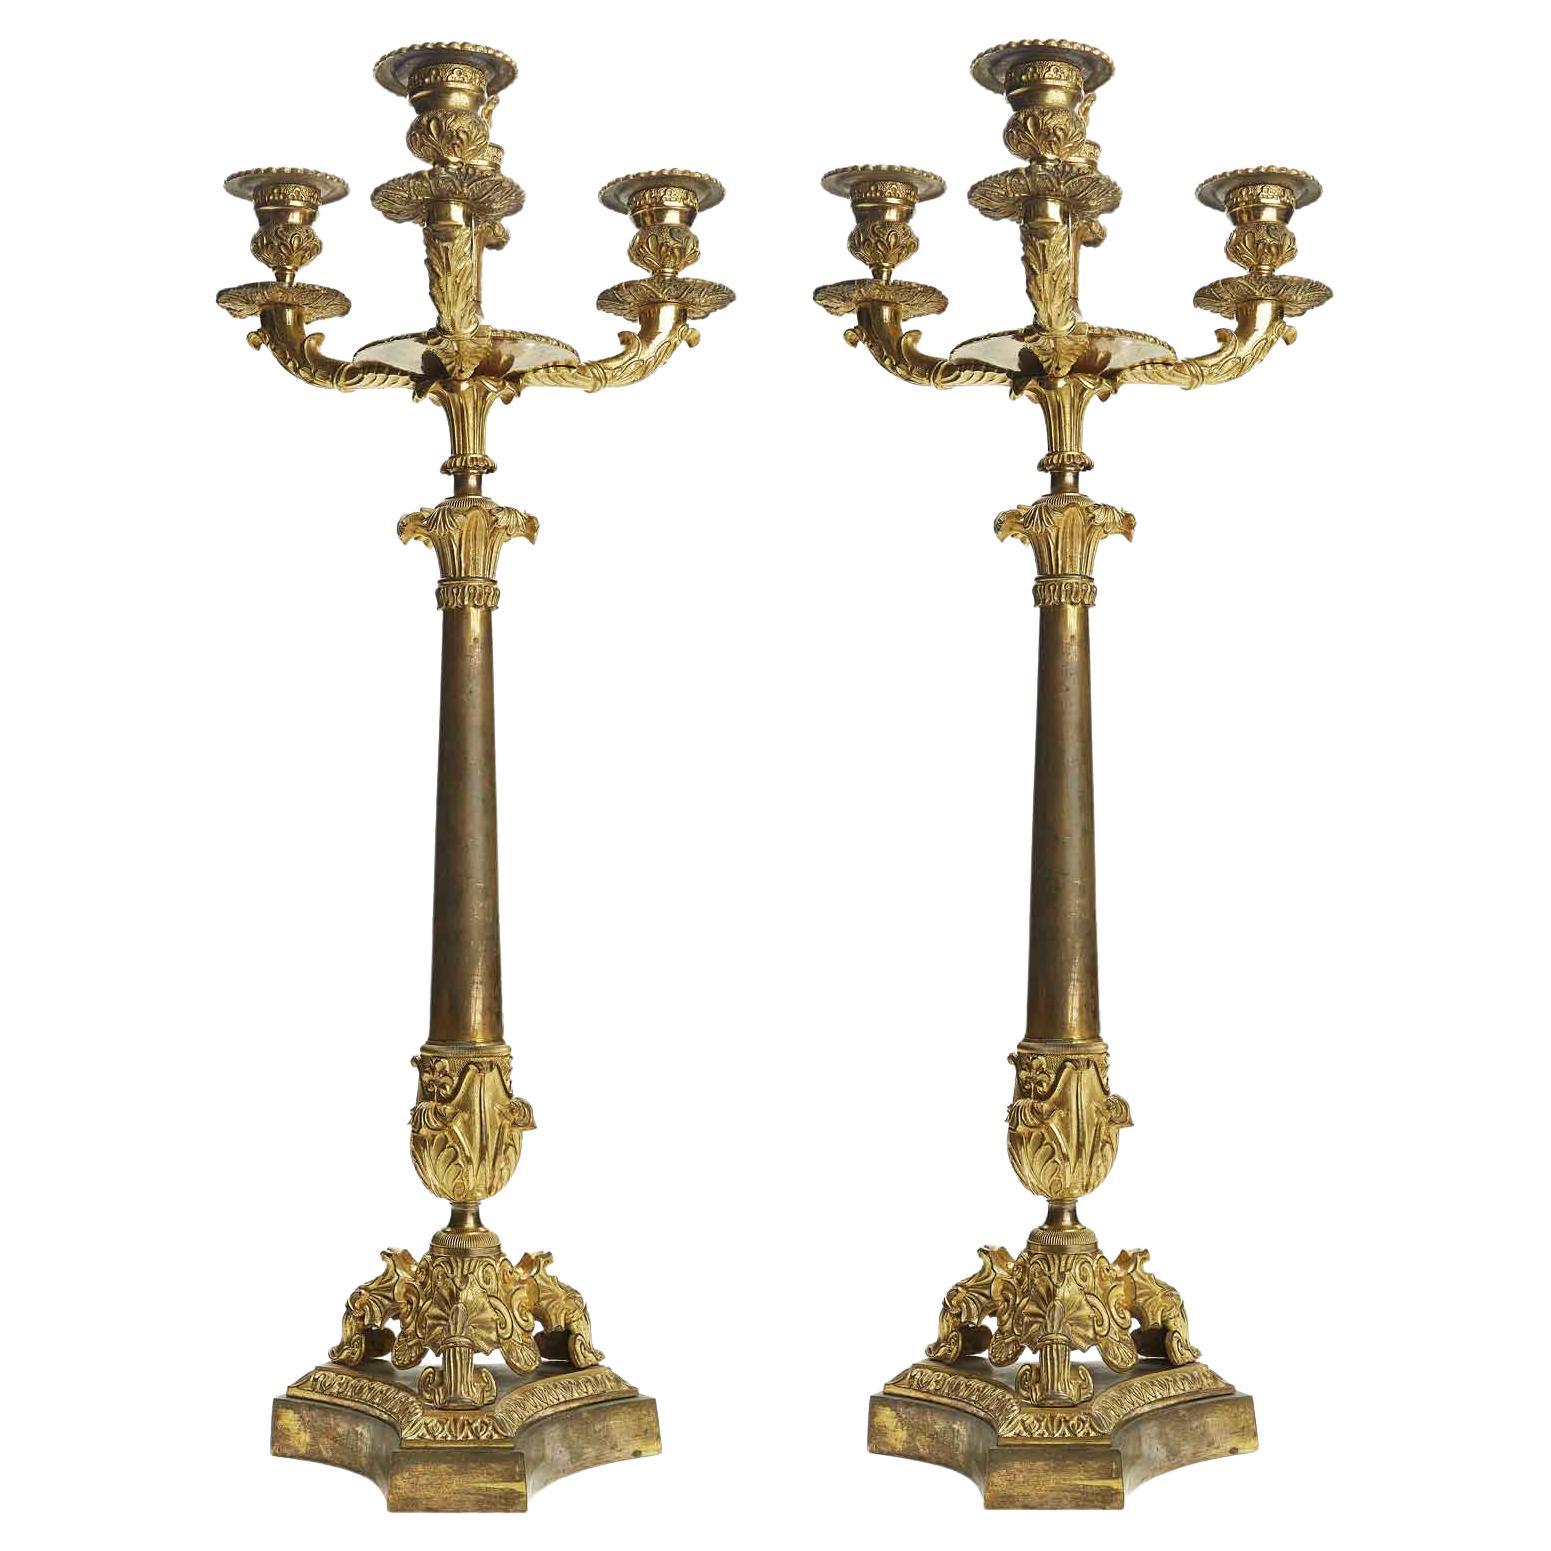 Paire de candélabres Empire à trois bras en bronze doré italien du 19ème siècle